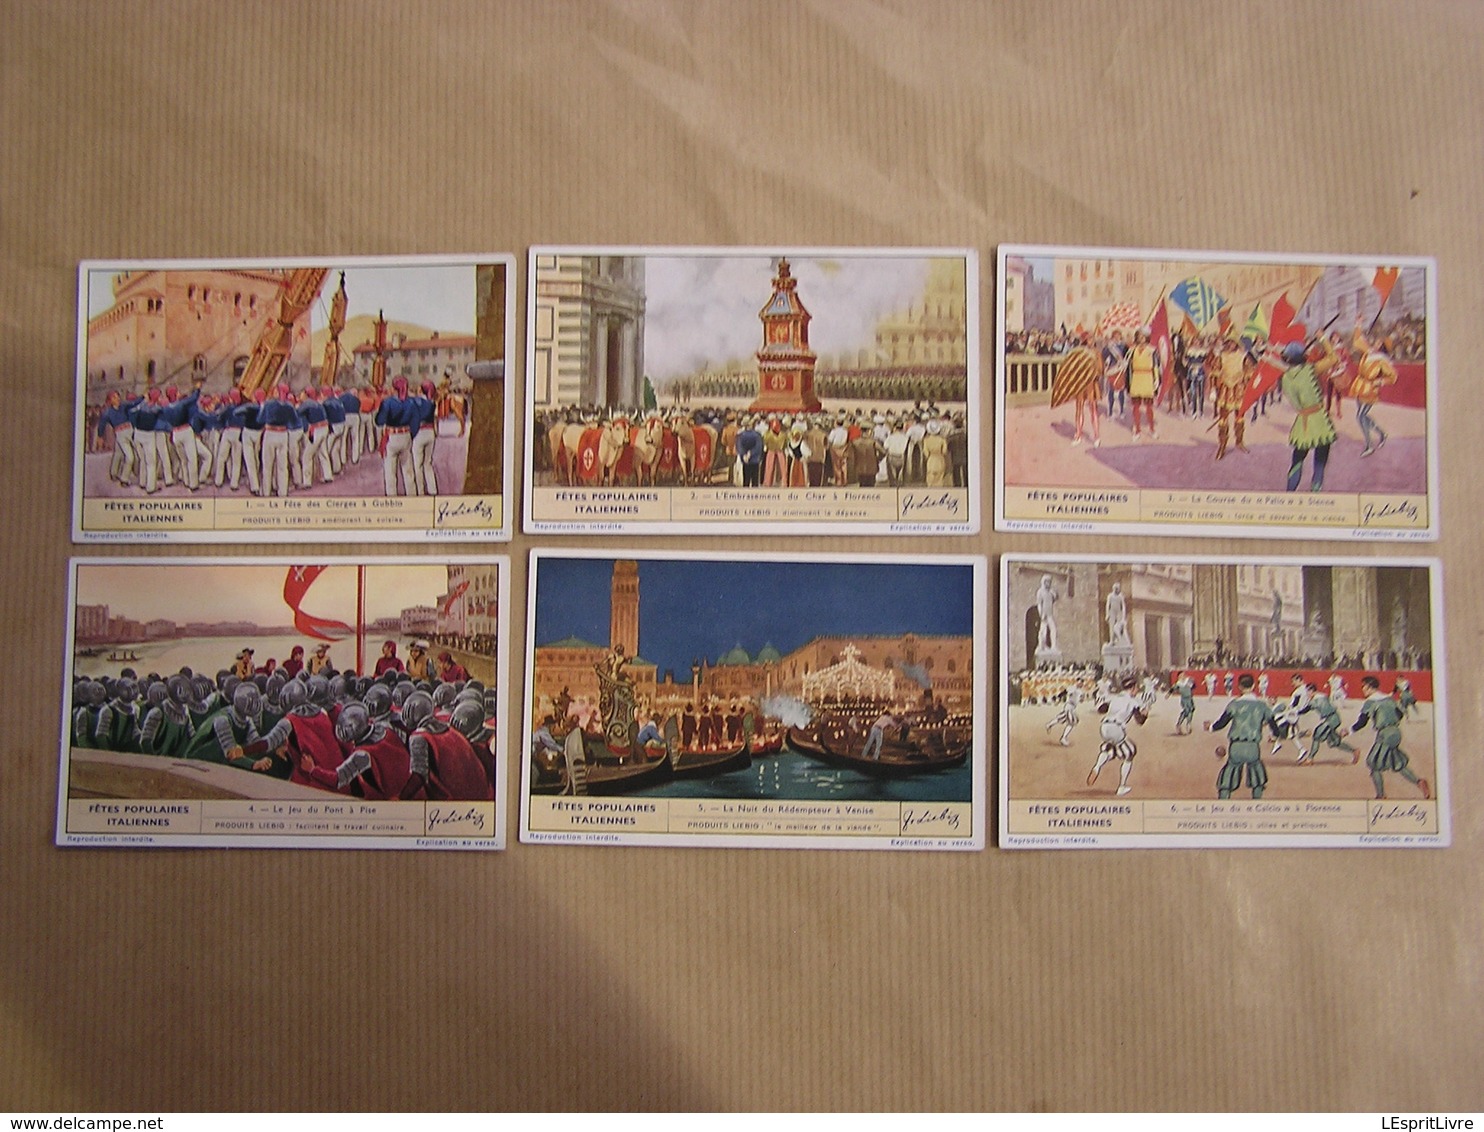 LIEBIG Fêtes Populaires Italiennes Italie Folklore Gubbio Sienne Florence Pise  Série De 6 Chromos Trading Cards Chromo - Liebig